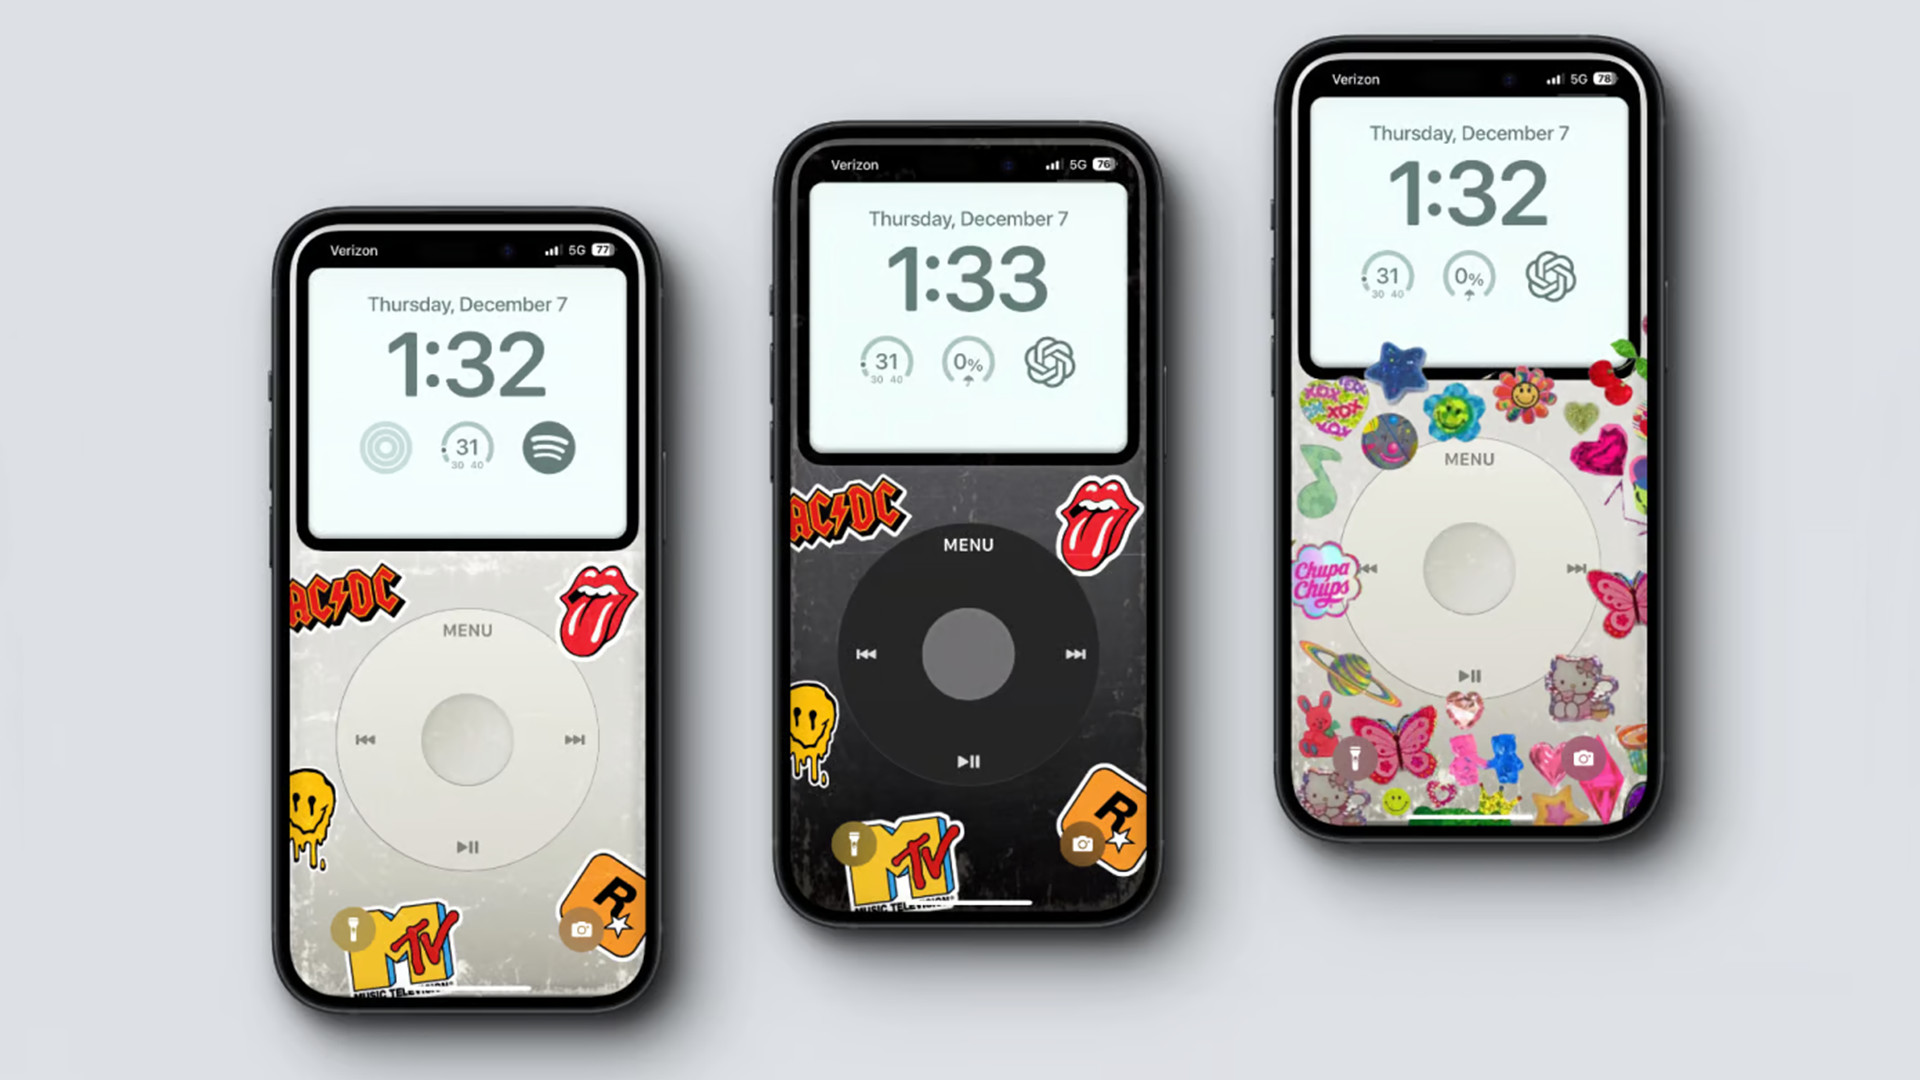 iPod на дисплее iPhone с царапинами и наклейками